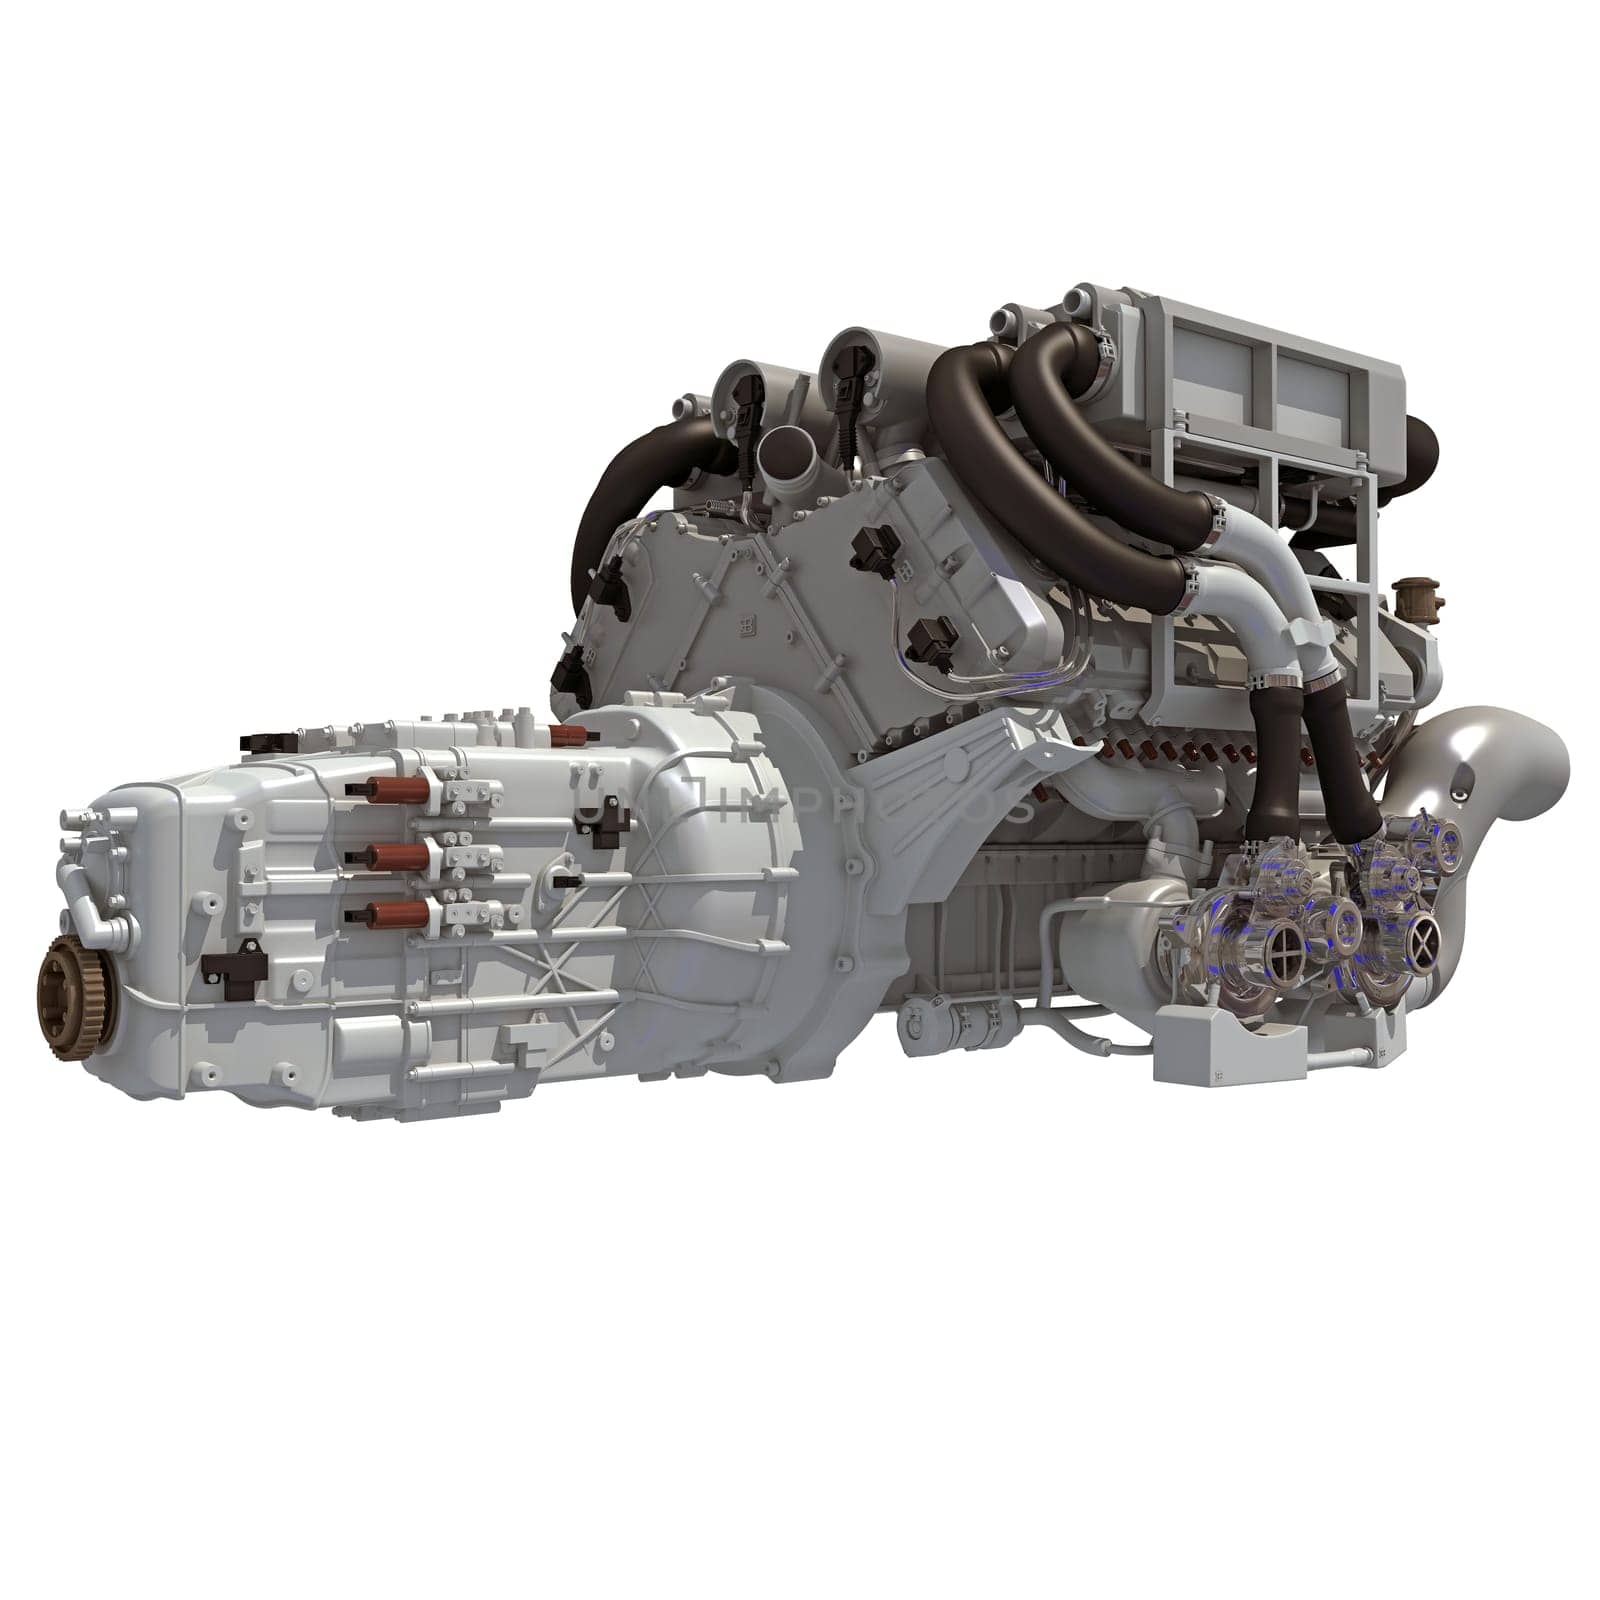 V16 Engine 3D rendering model on white background